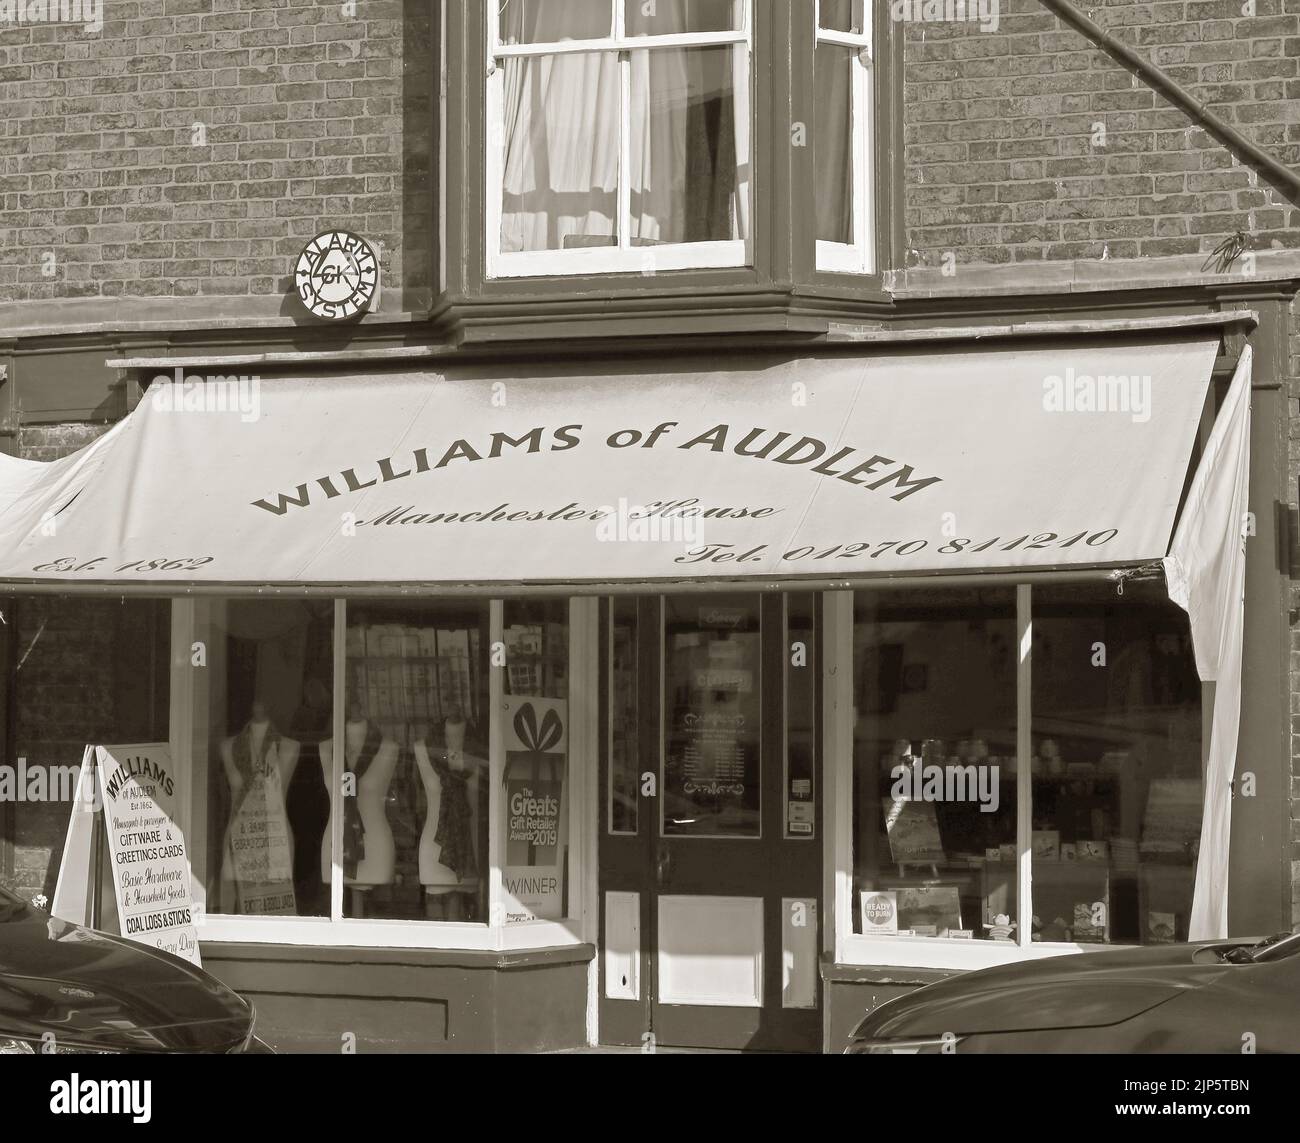 Williams aus Audlem, Manchester House, 1 Shropshire Street, Audlem, Cheshire, England, Großbritannien, CW3 0AB – Schwarzweiß Stockfoto